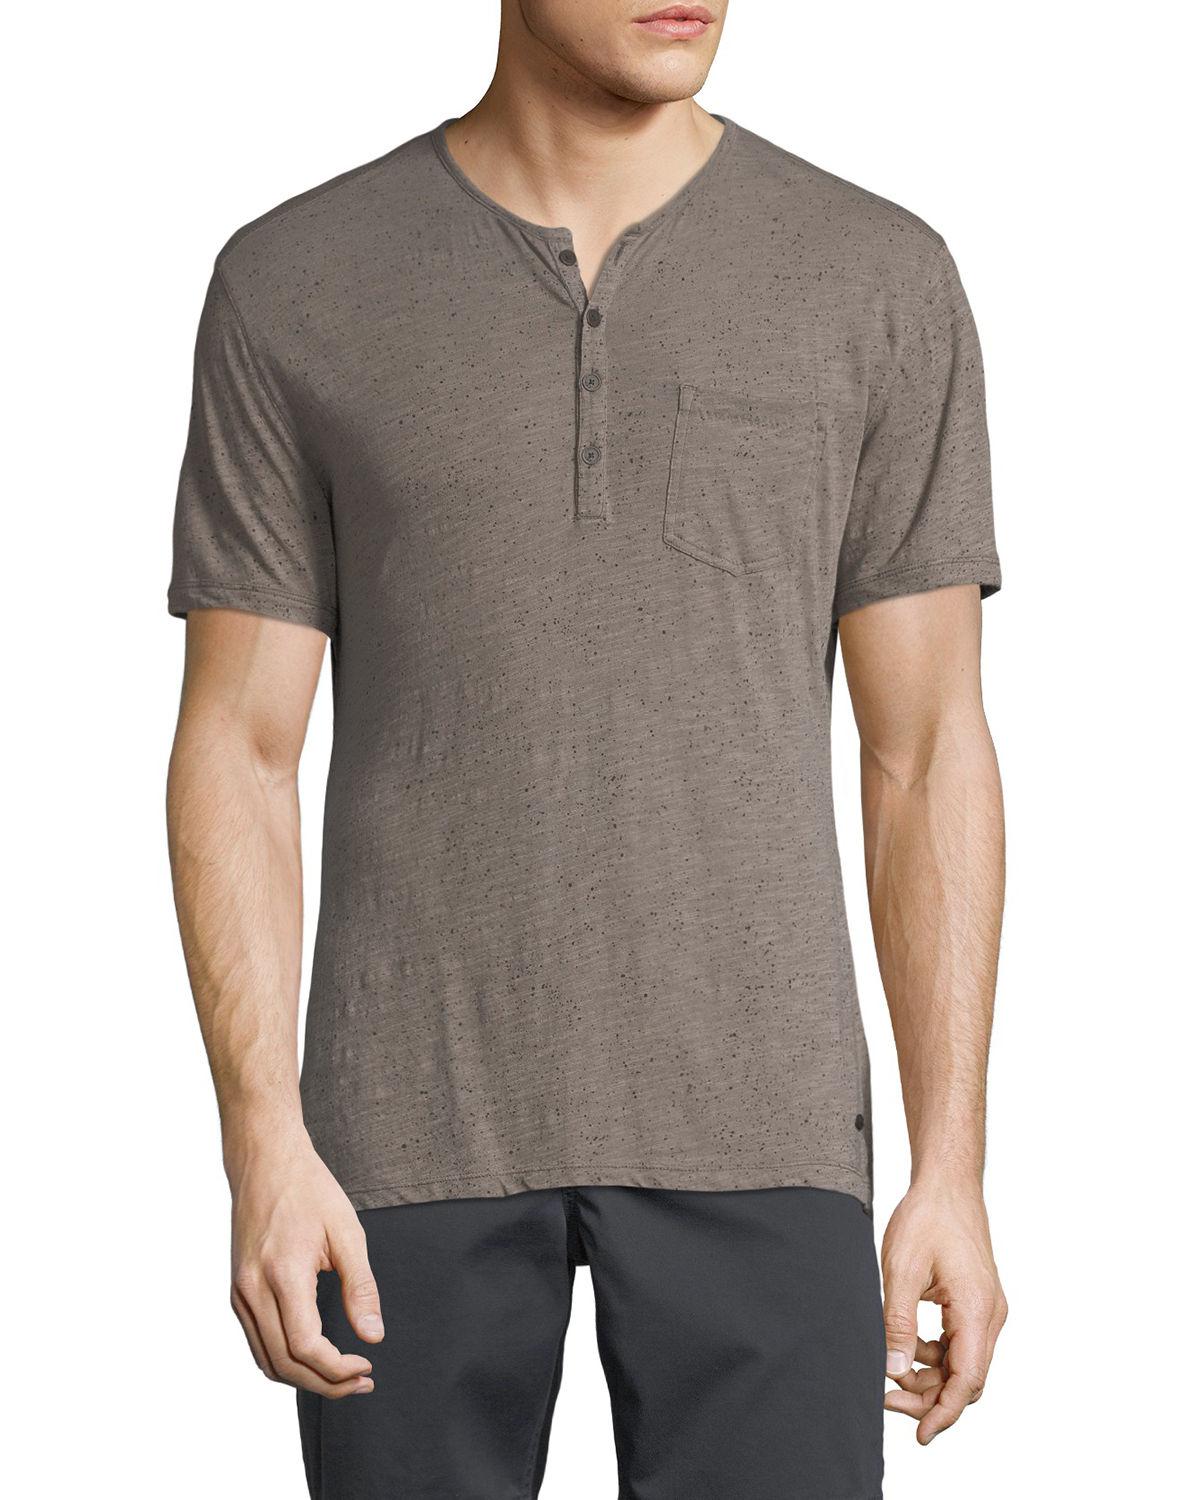 Lyst - John Varvatos Men's Splatter Print Henley Shirt in Gray for Men